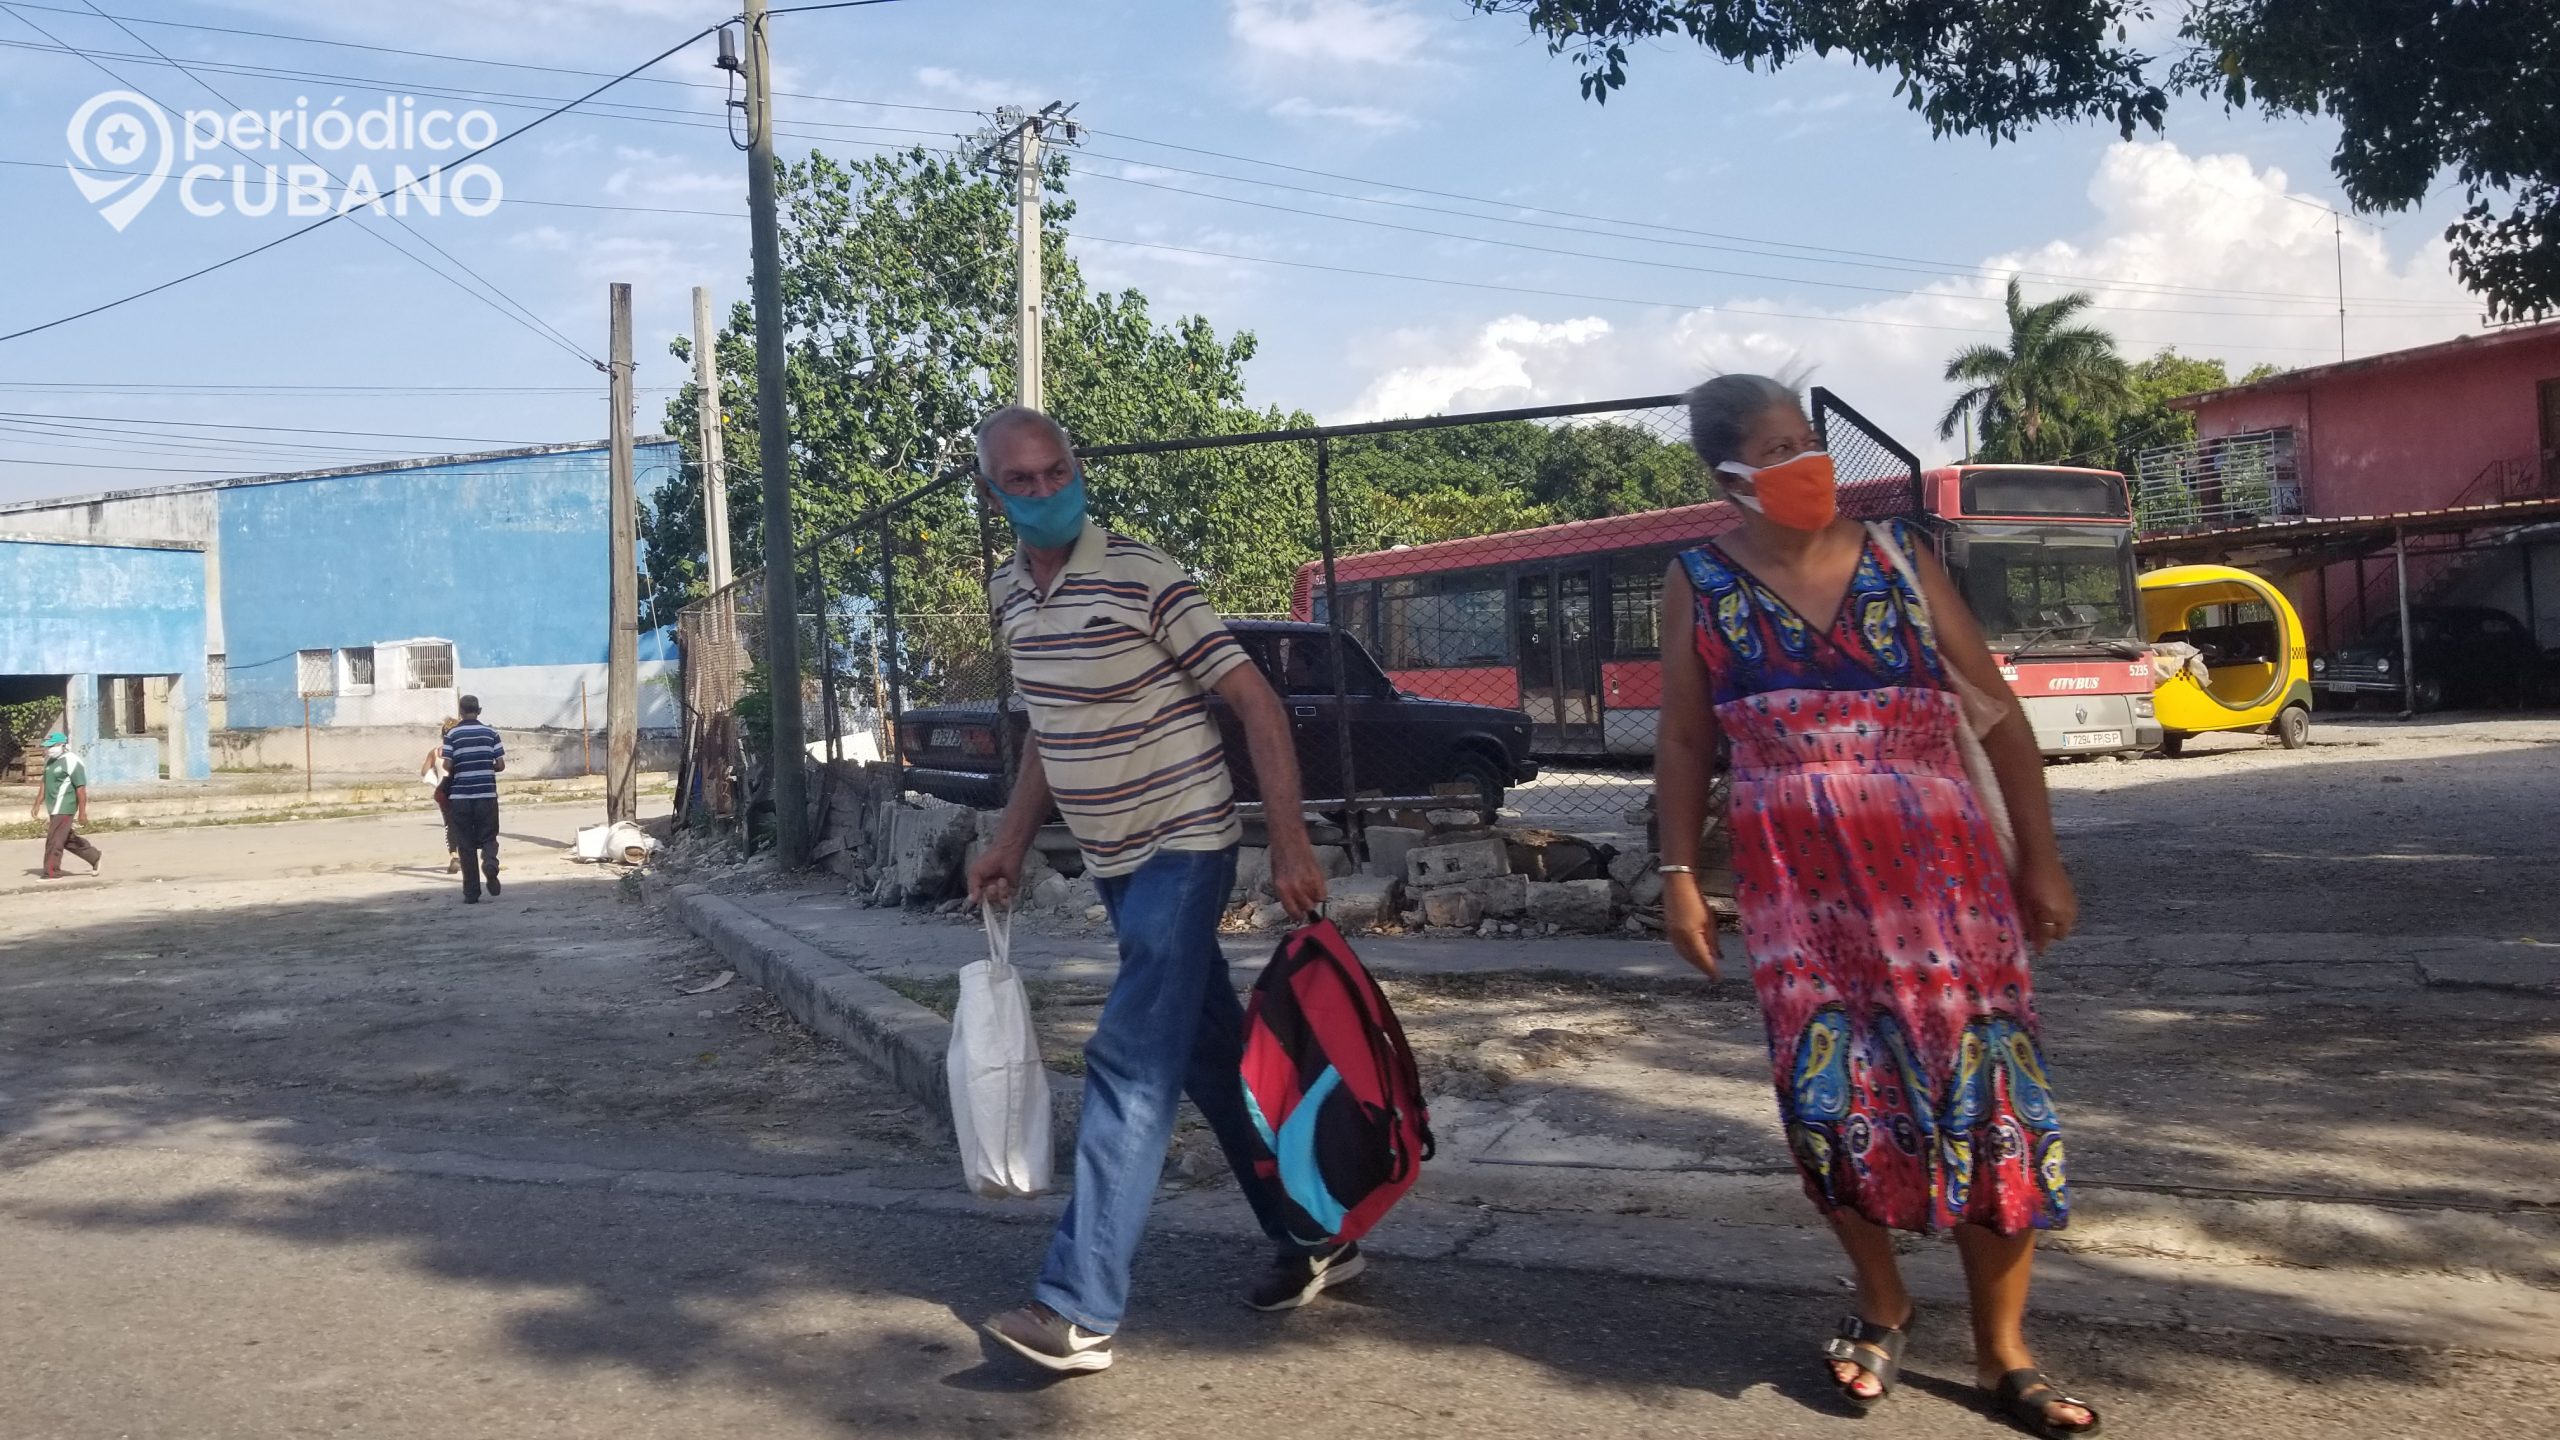 Cuba sin casos positivos de COVID-19 por primera vez desde 2020